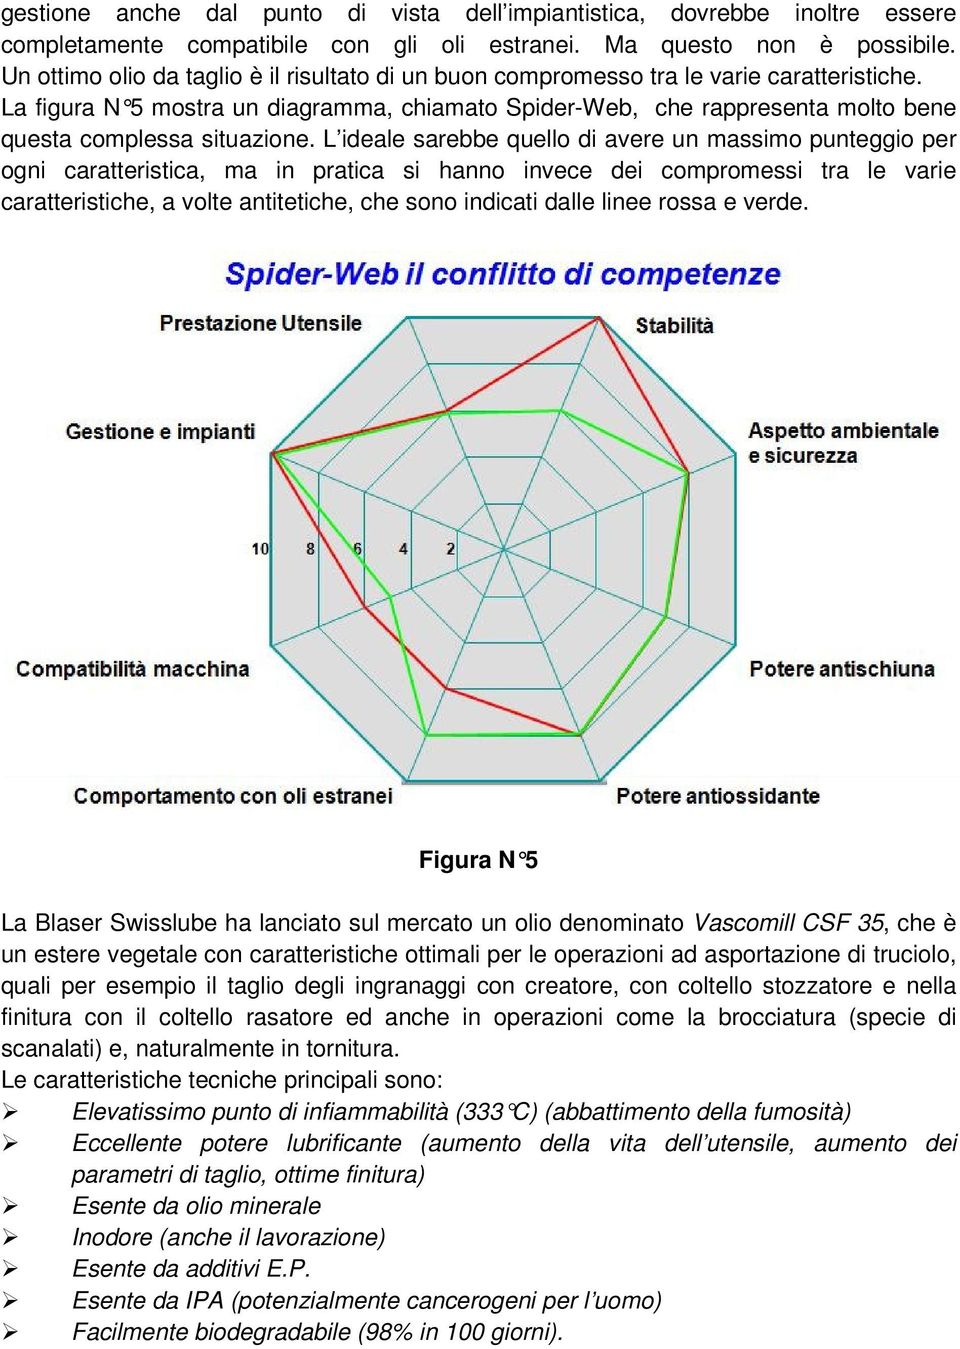 La figura N 5 mostra un diagramma, chiamato Spider-Web, che rappresenta molto bene questa complessa situazione.